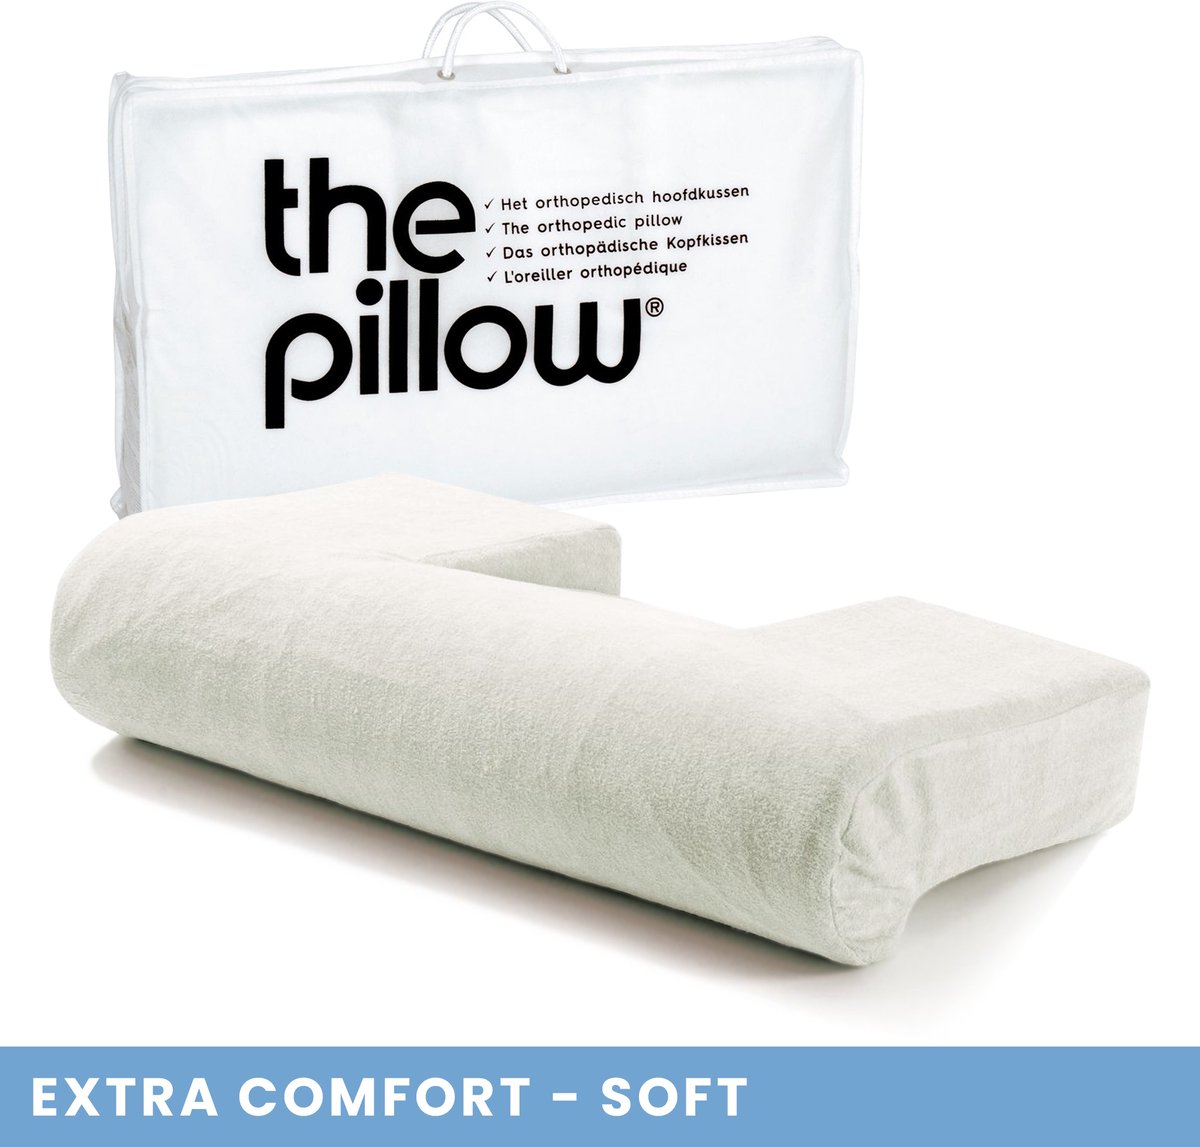 The Pillow Extra Comfort Zacht Orthopedisch kussen Soft Latex Hoofdkussen voor Nekklachten Kussen voor Nek inclusief Velours Kussensloop 63x36x15cm